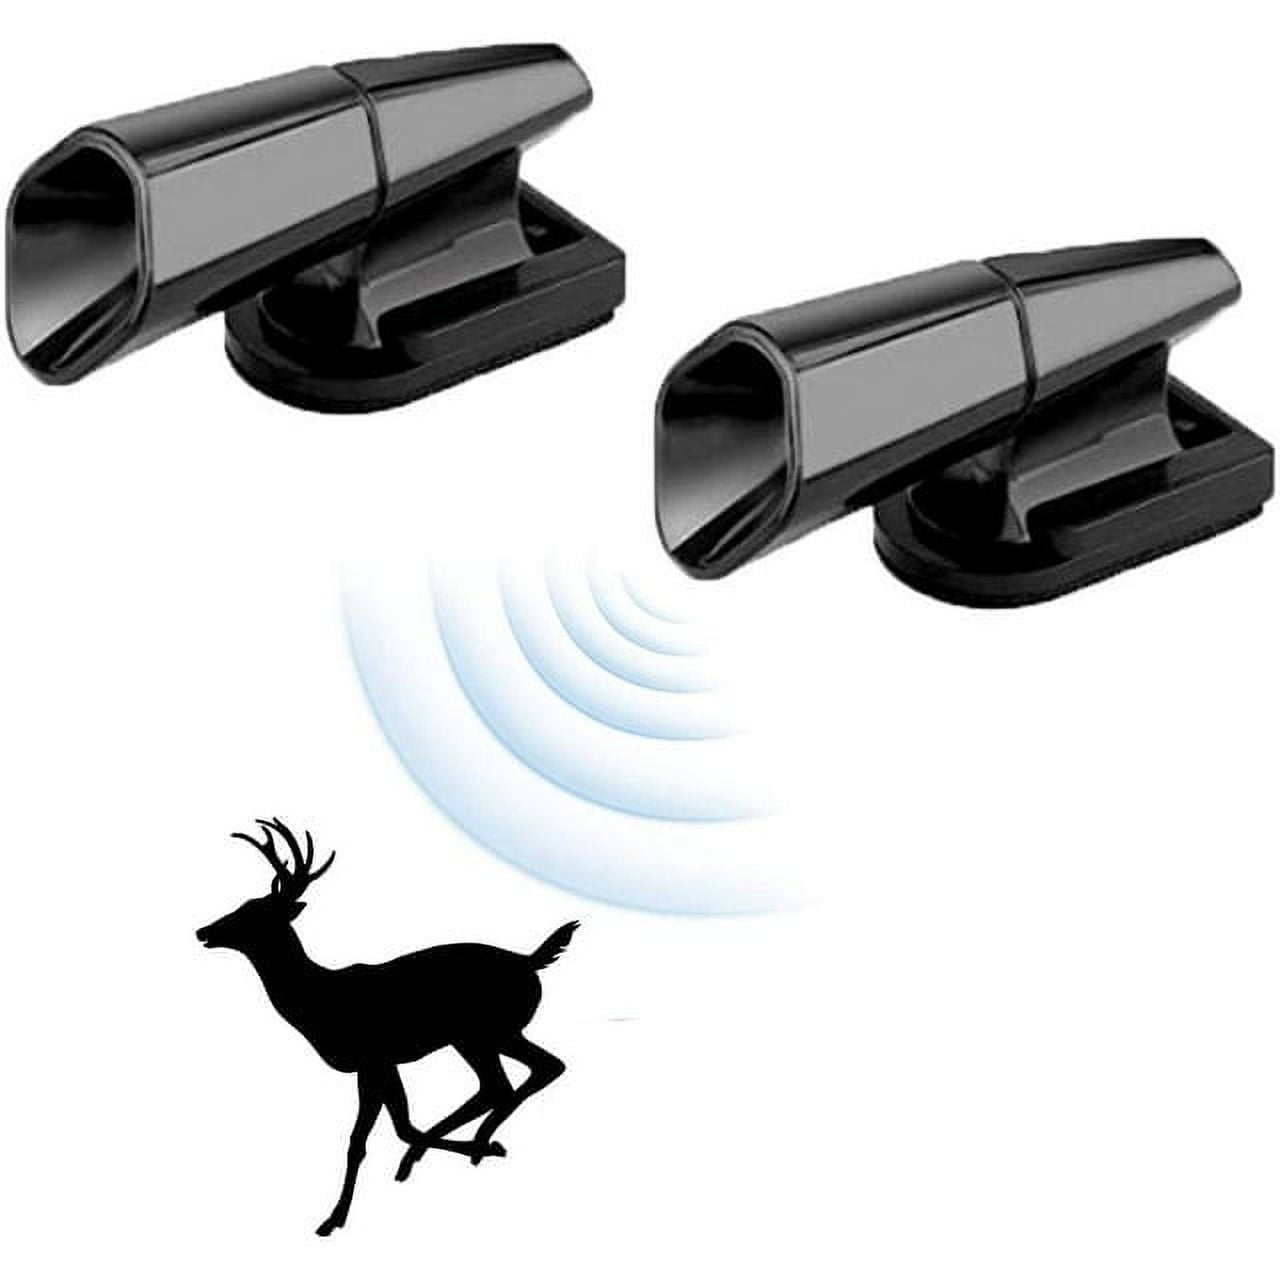 Pdtoweb 4pcs Black Ultrasonic Car Alert Whistle Warning Animal Deer  Repeller Alarm – kaufe die besten Produkte im Onlineshop Coolbe